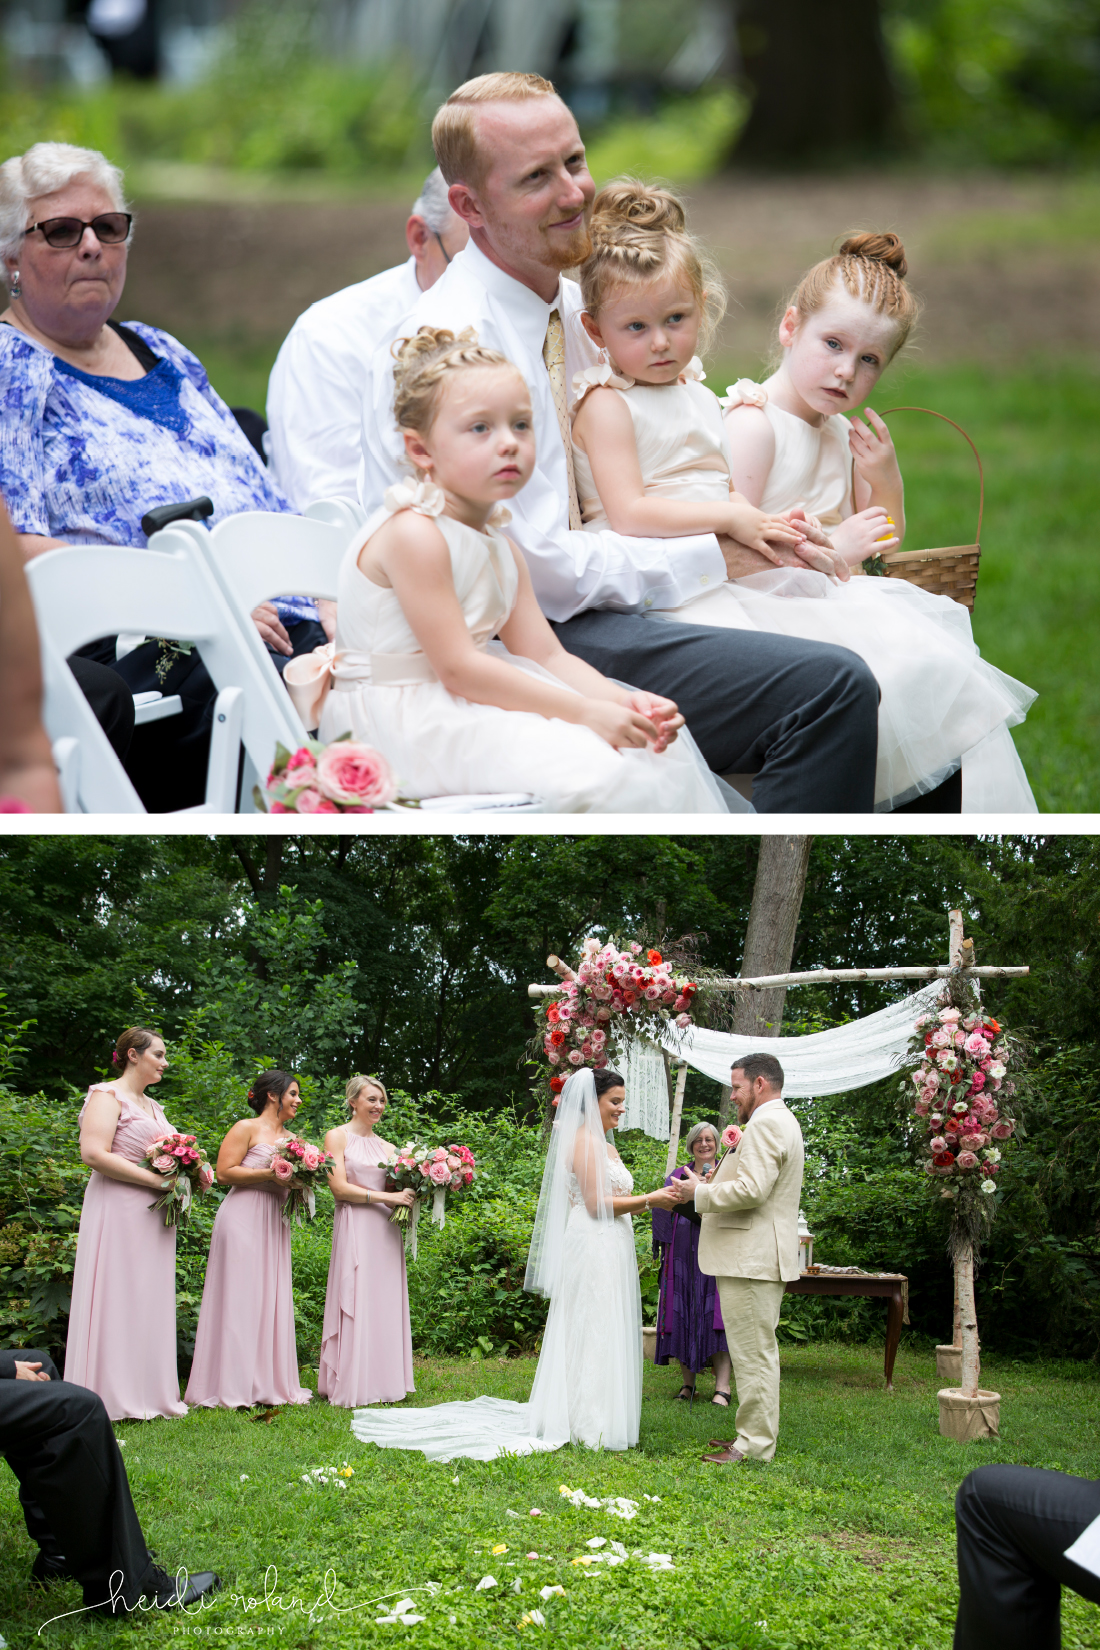 Wedding vows at Awbury Arboretum